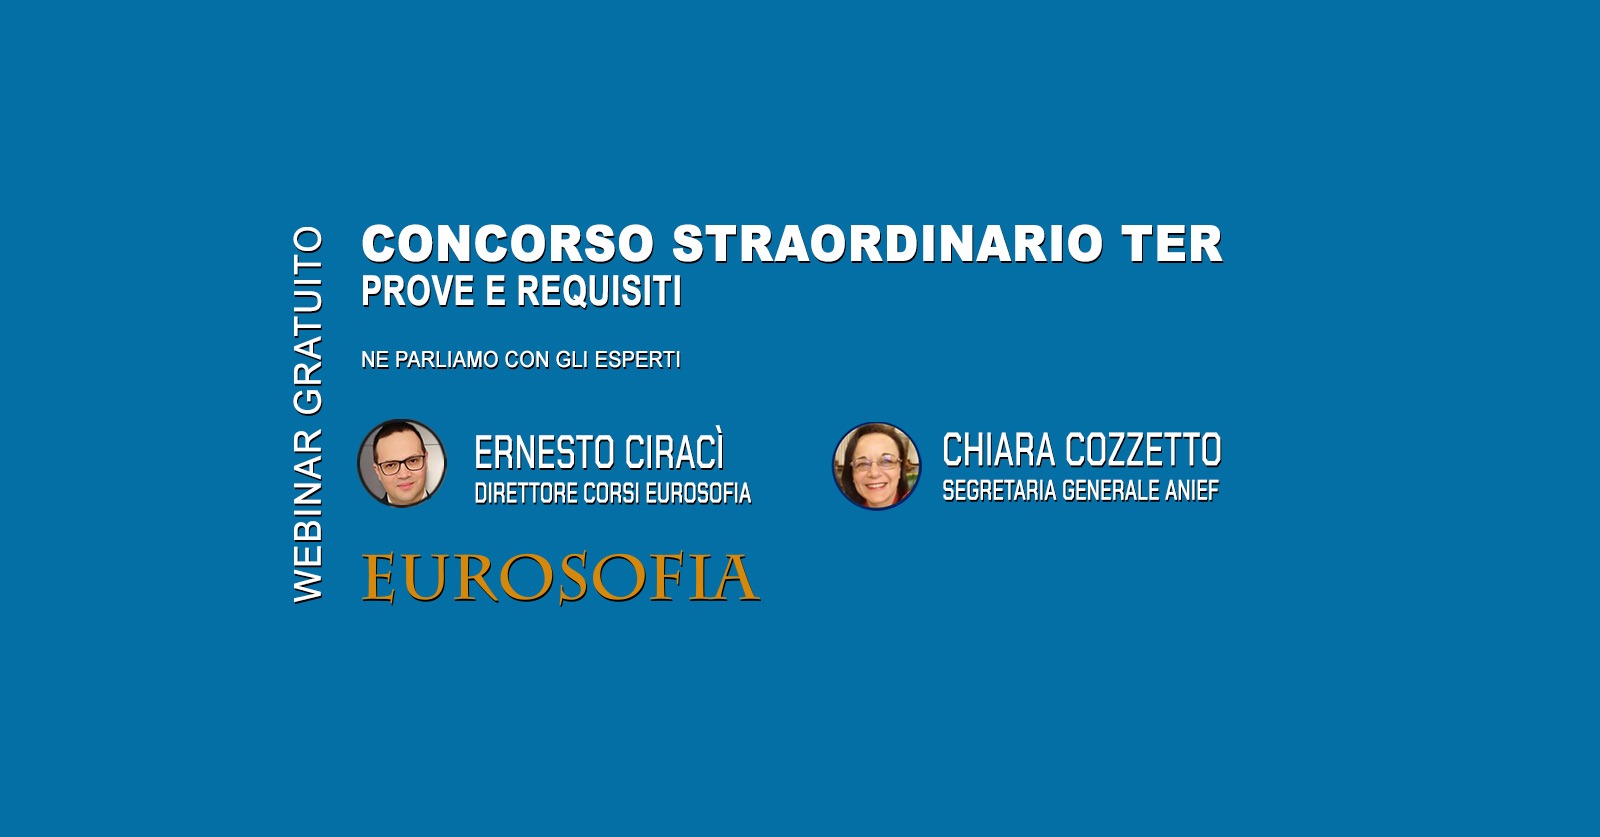 Concorso Docenti Straordinario TER. Il 7 luglio dalle 15.00 alle 17.00 segui il webinar gratuito con Chiara Cozzetto ed Ernesto Ciracì. 